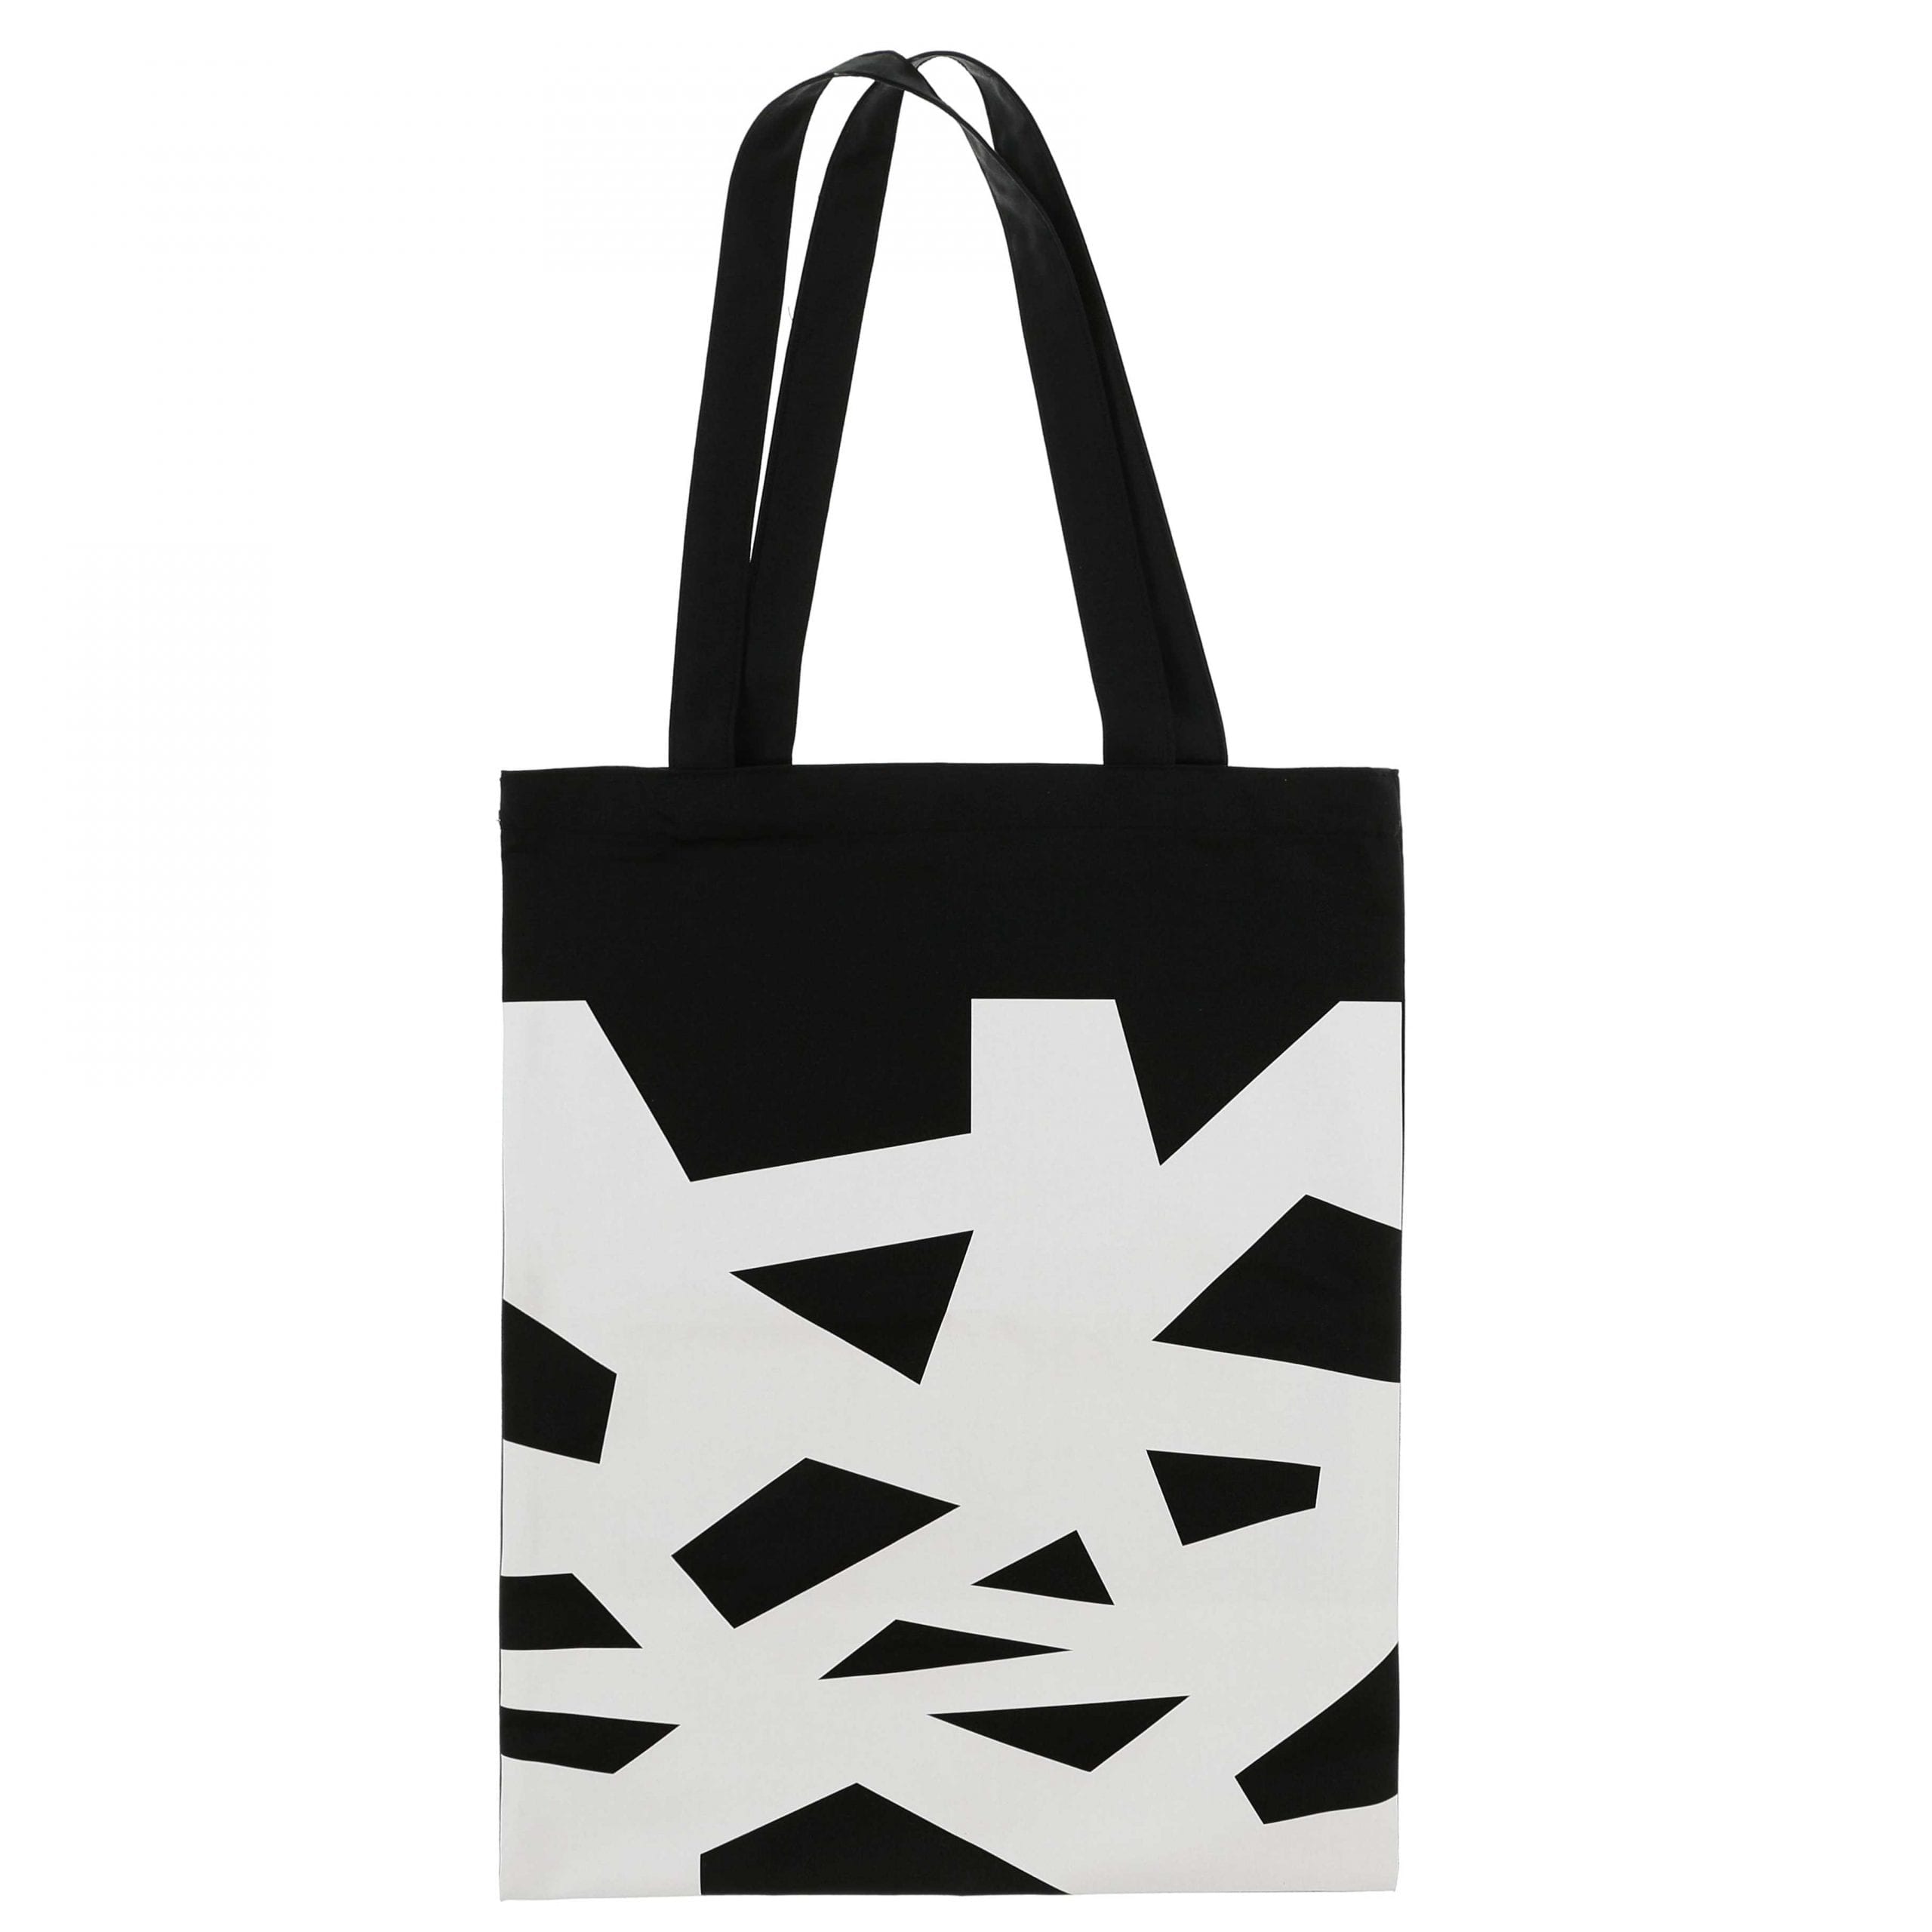 usable shopping bag Abudhabi cotton shopping bag  gift